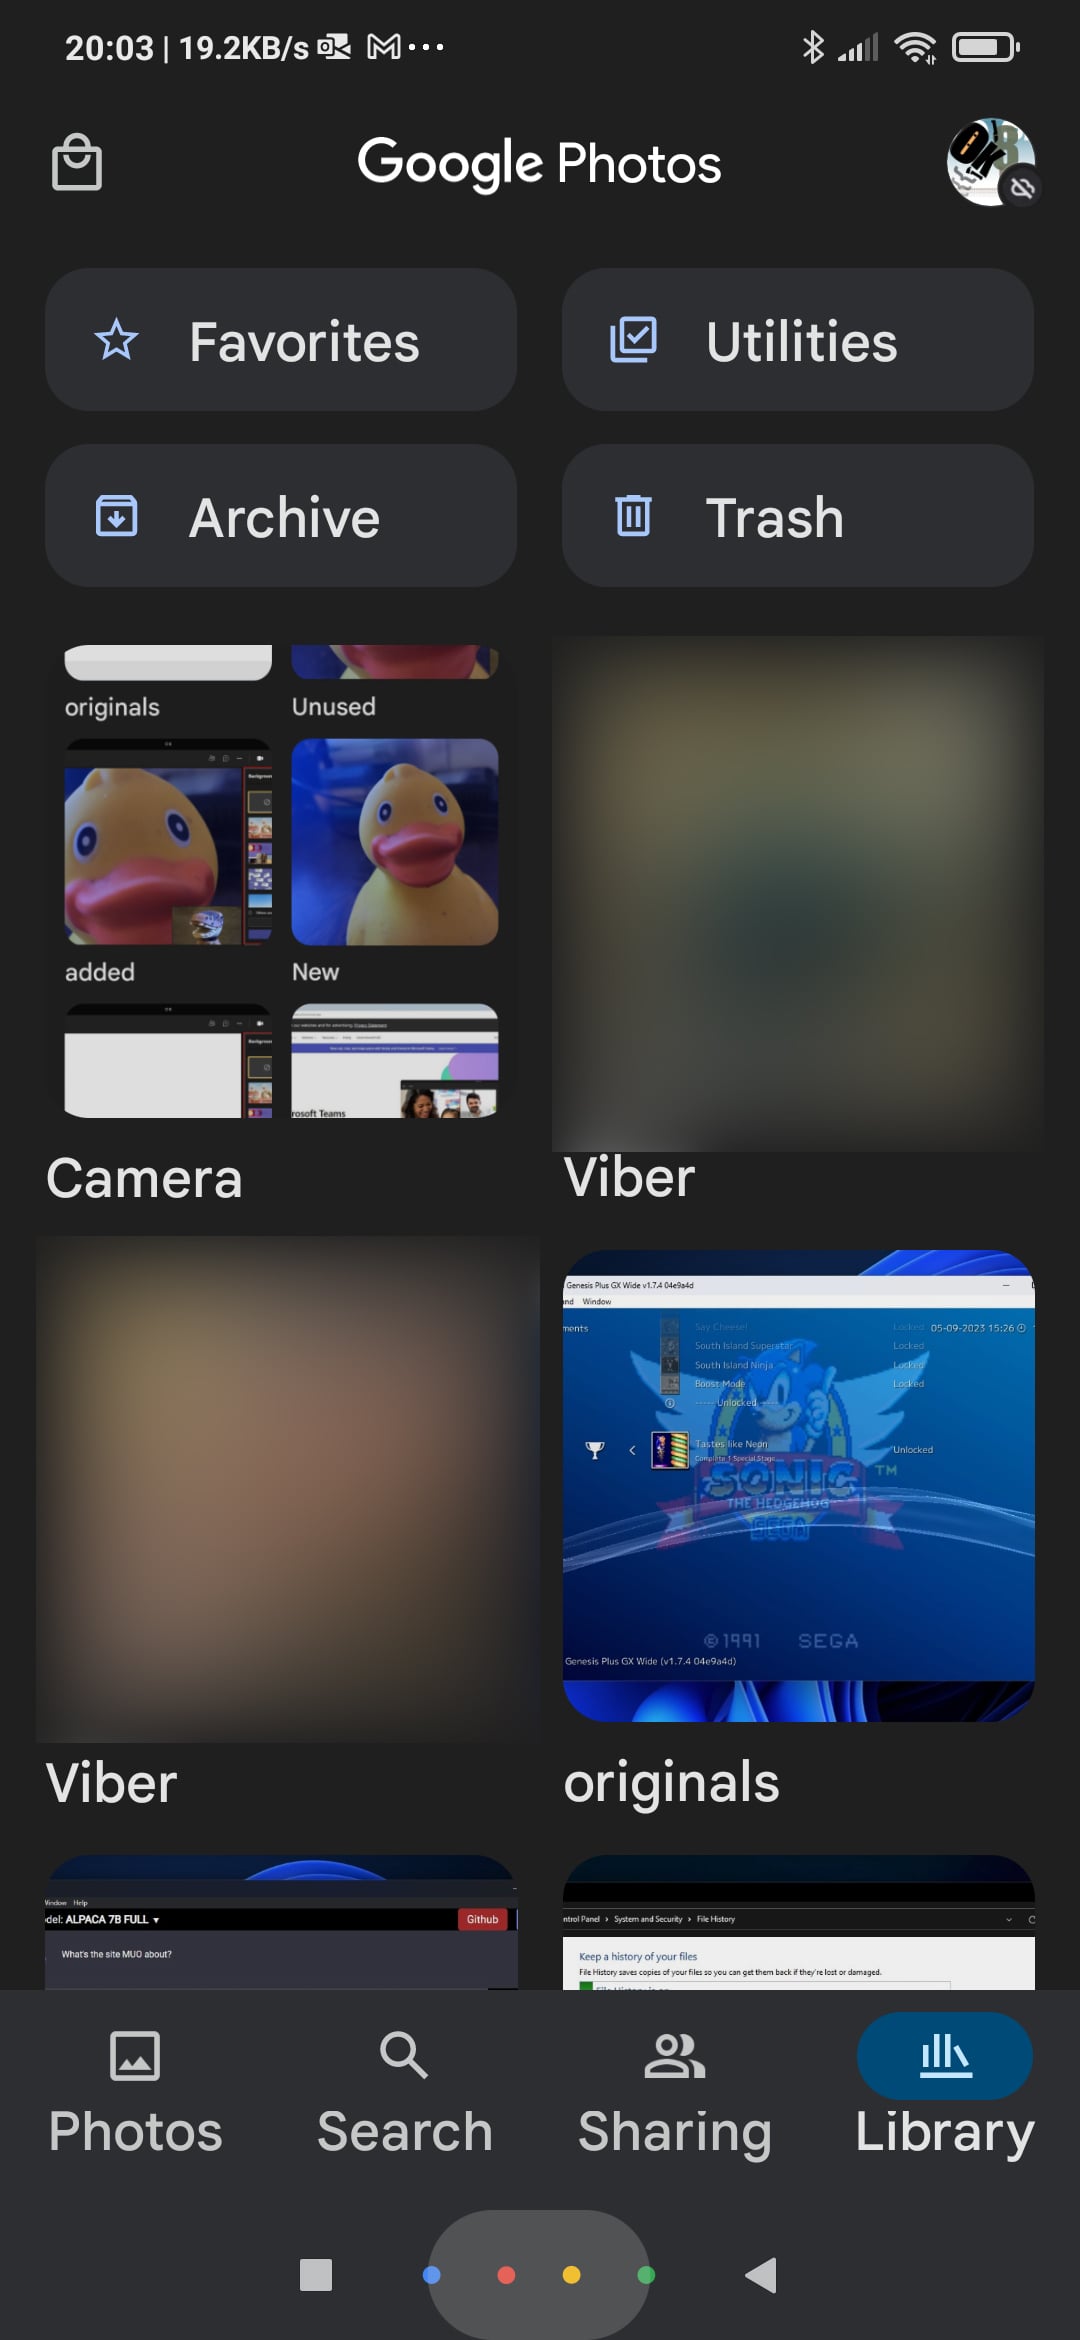 Google Photos Main Interface